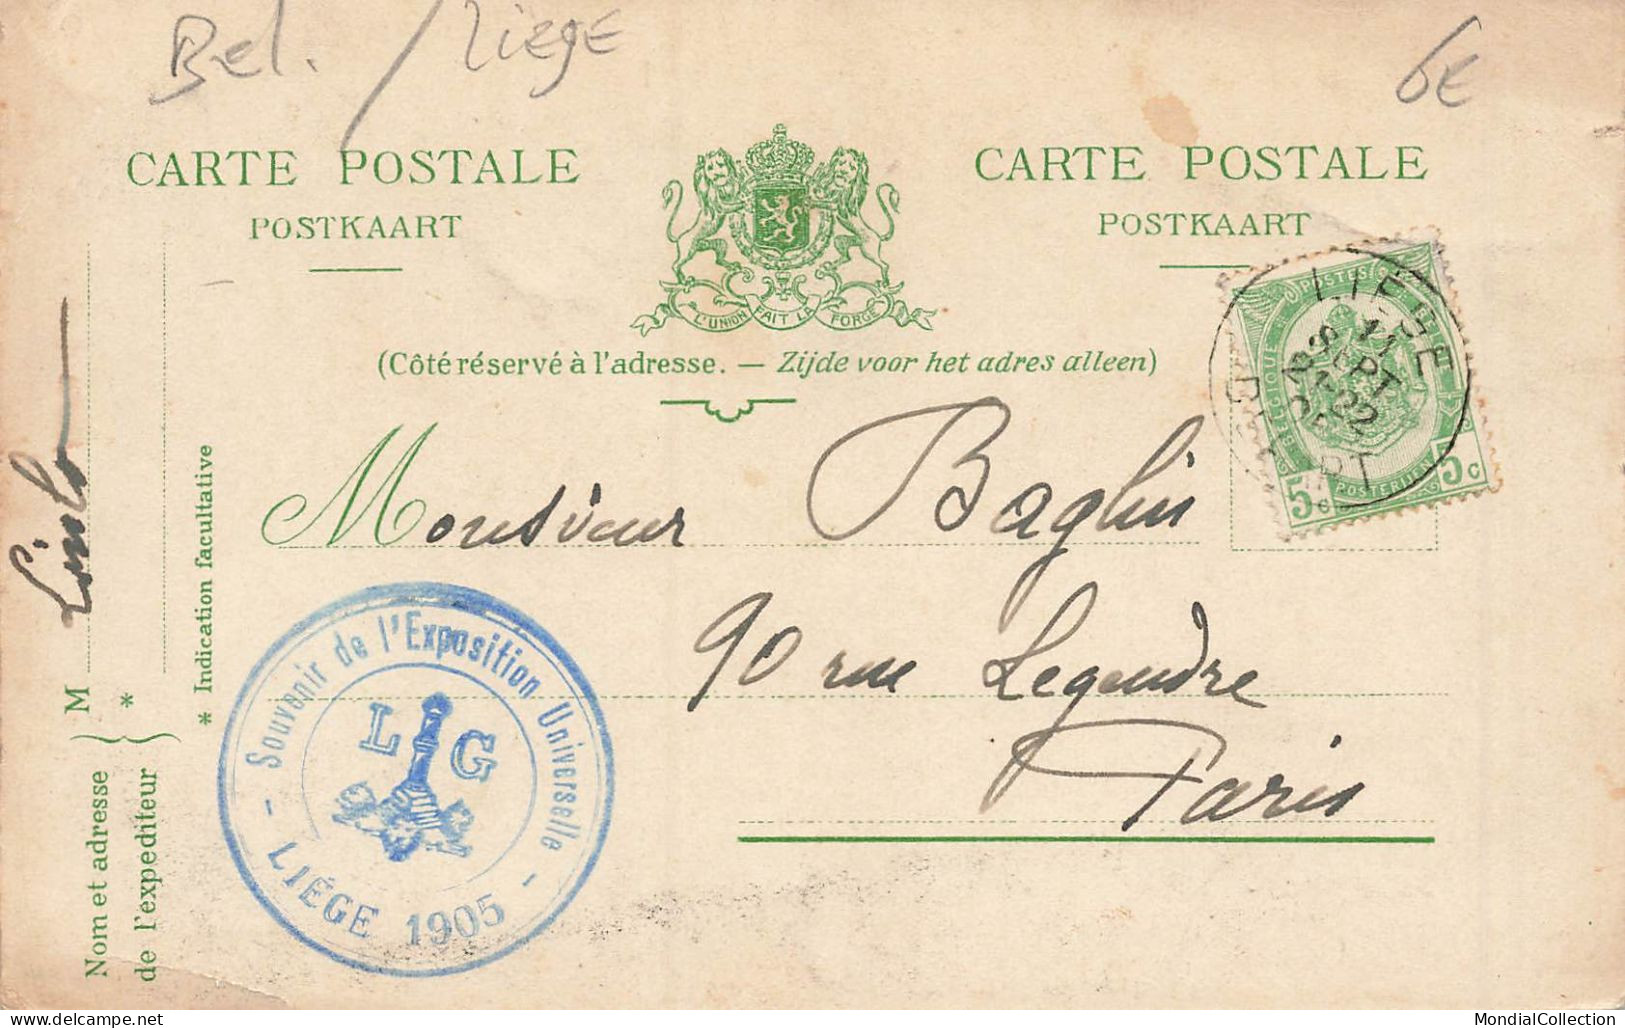 MIKIBP11-061- BELGIQUE LIEGE EXPOSITION 1905 UN RECRUTEMENT MATINAL RETOUR D UN CONGRES PAR ILLUSTRATEUR - Liège